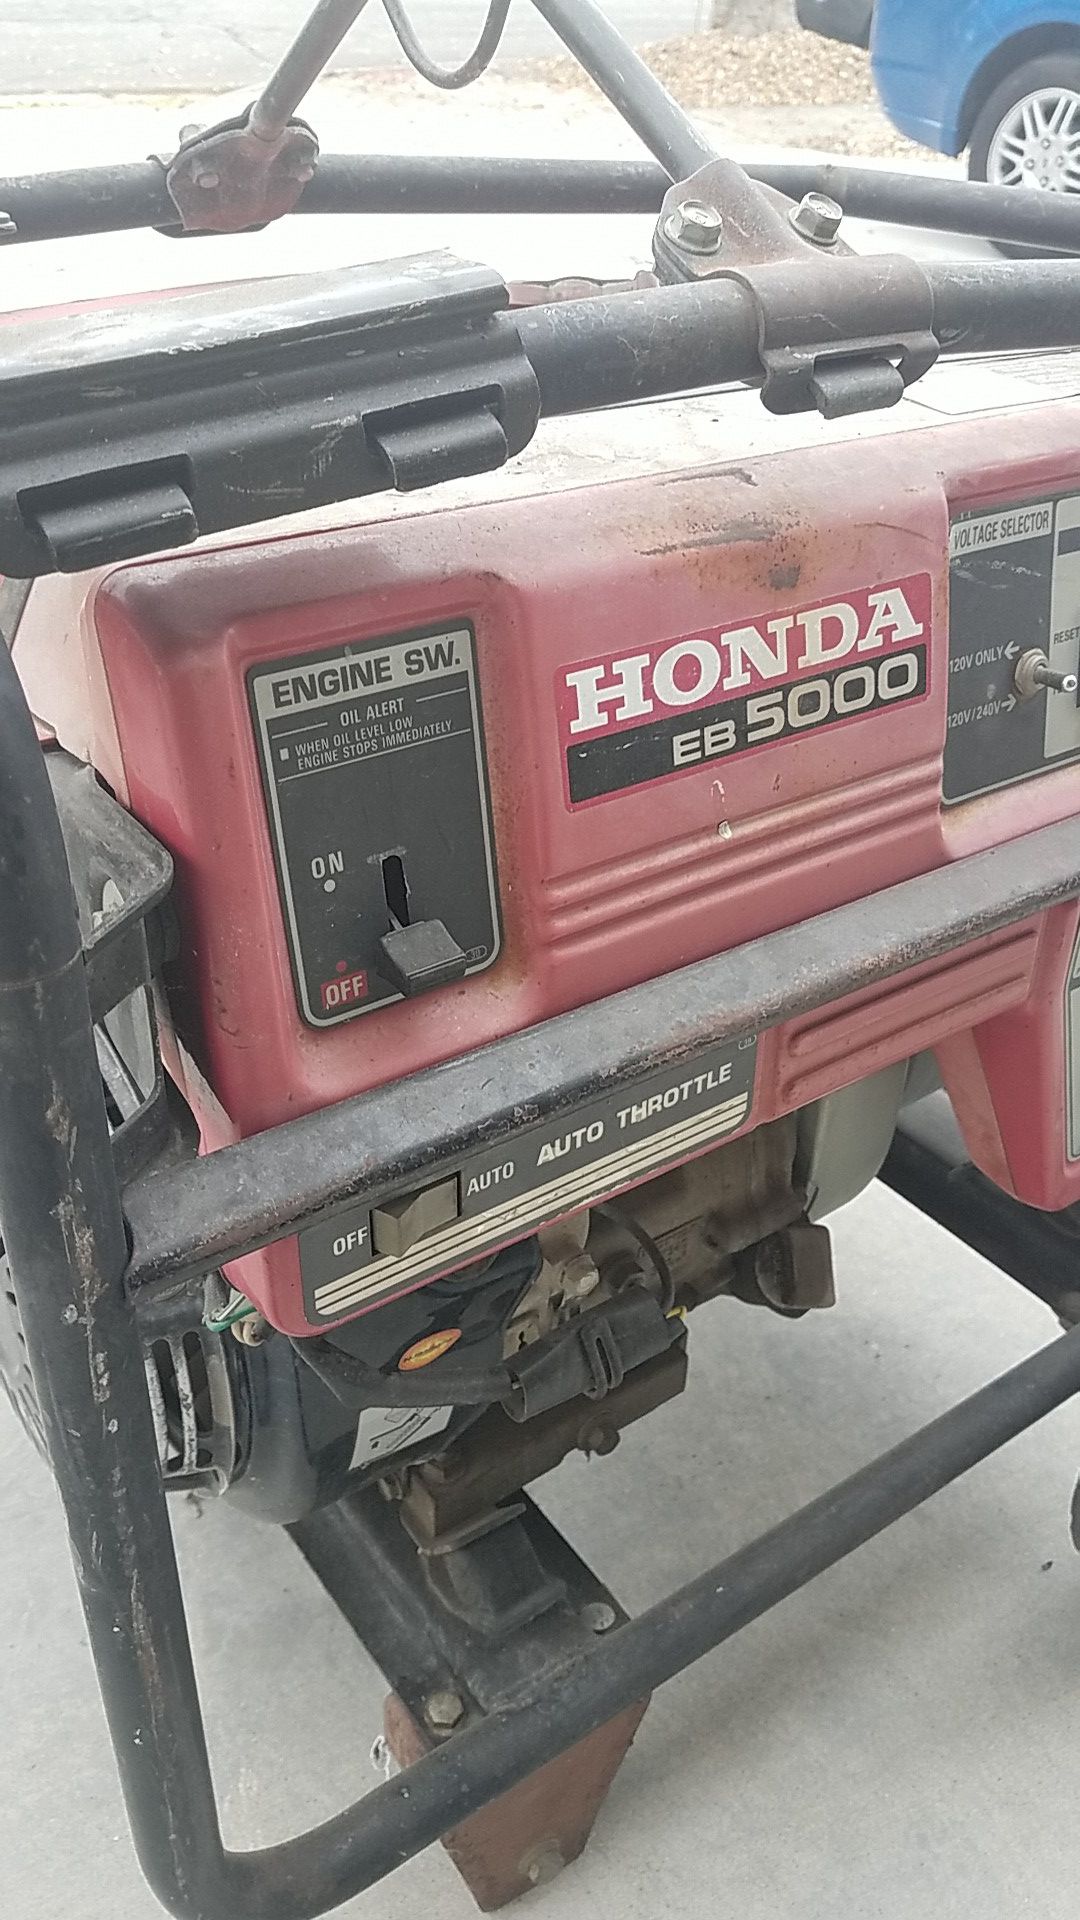 HONDA EB5000 generator